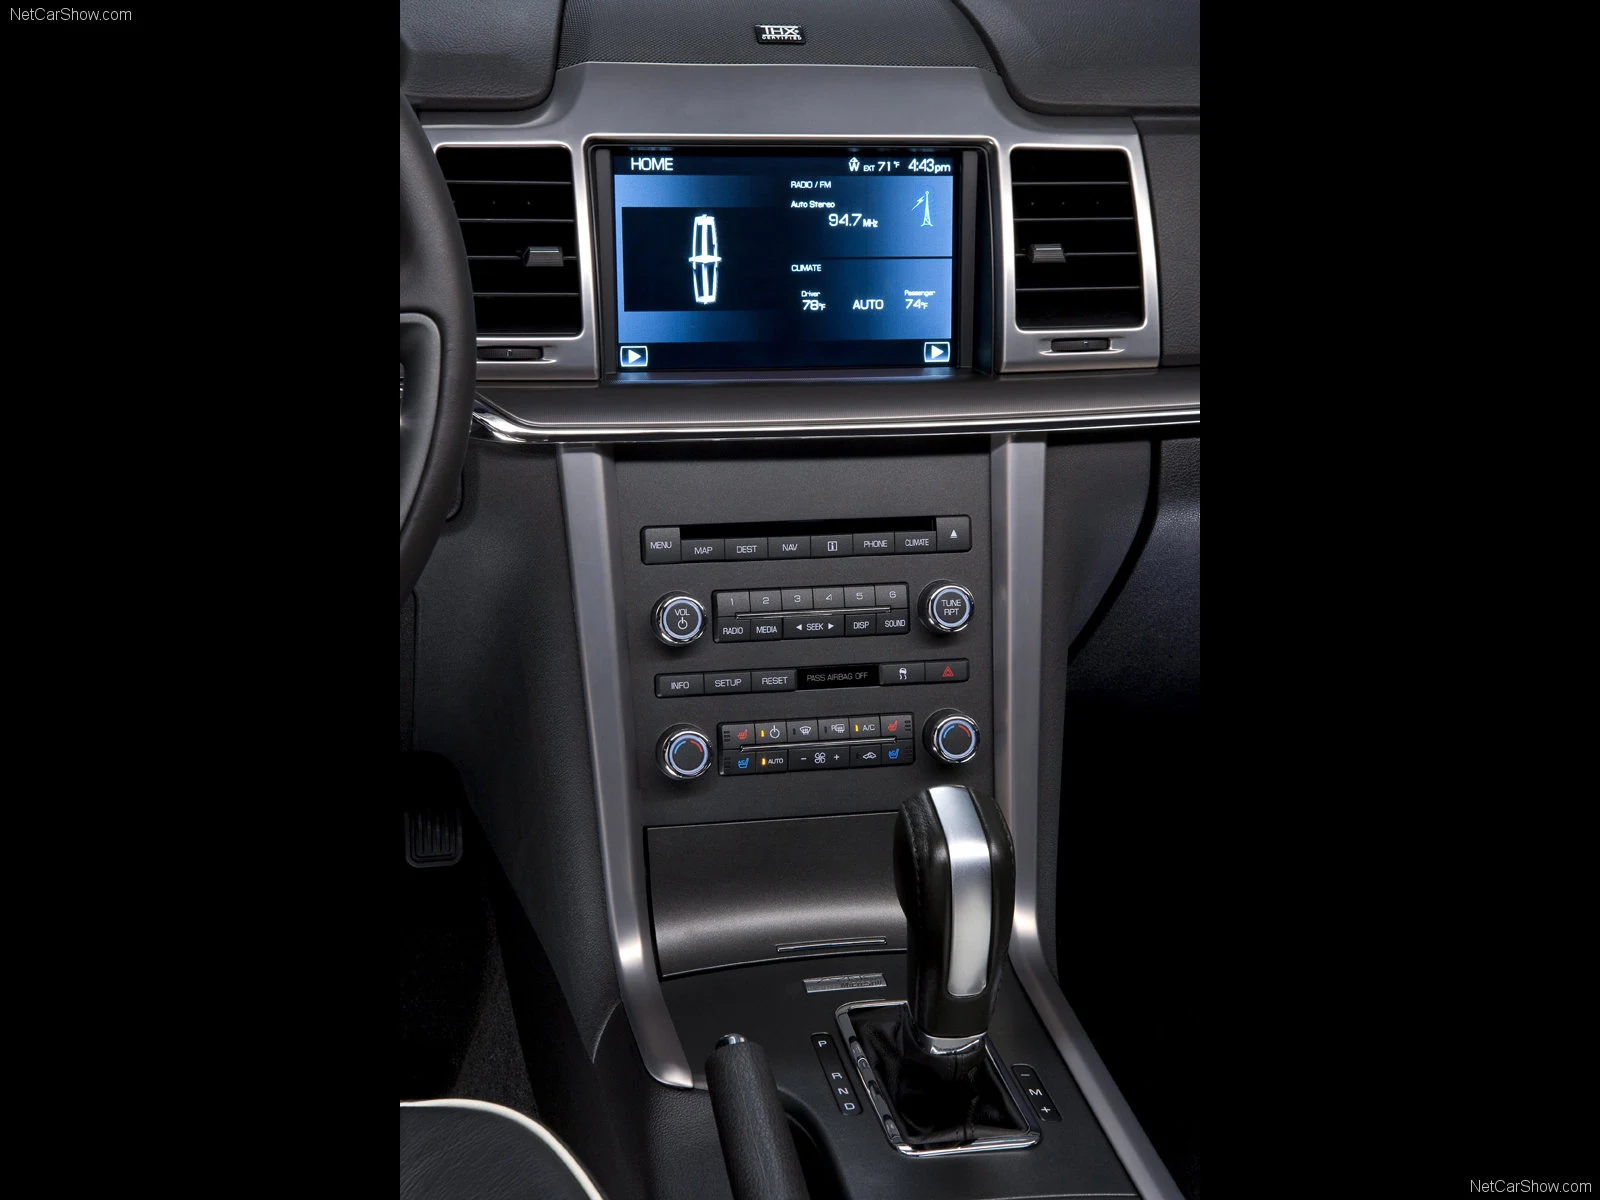 Hình ảnh xe ô tô Lincoln MKZ 2010 & nội ngoại thất